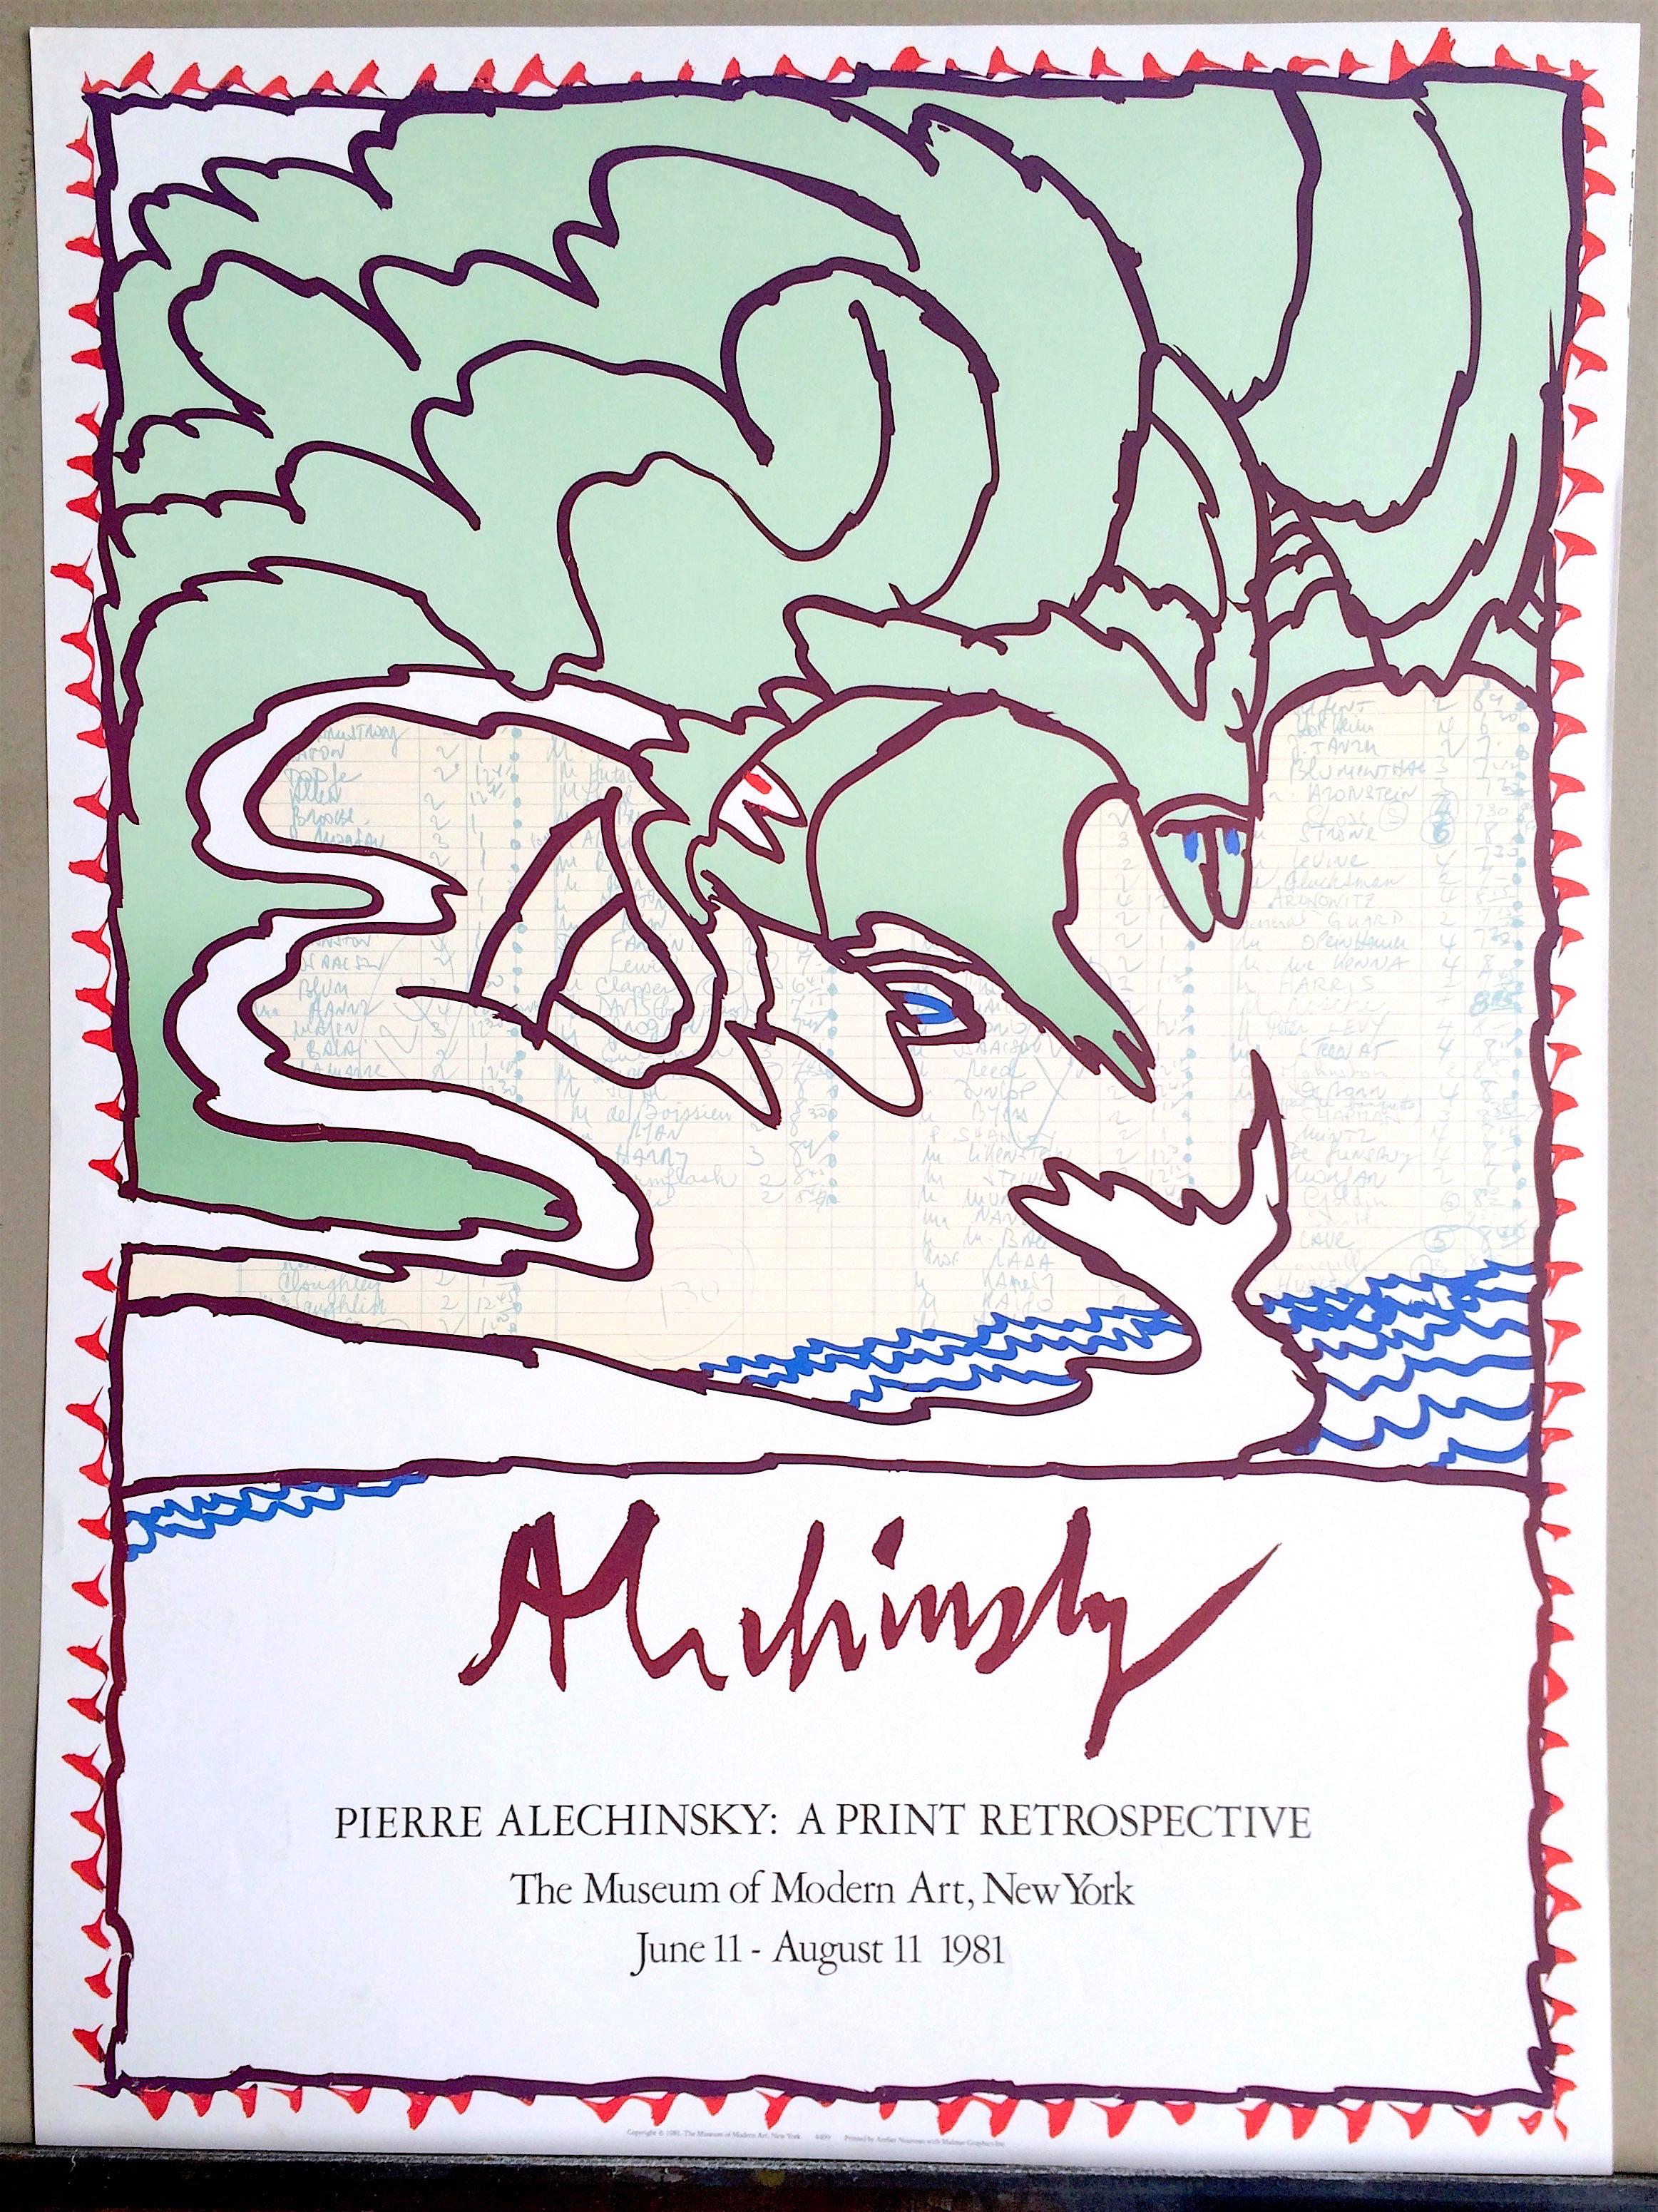 Affiche rétrospective de l'estampe du MOMA, 1981, lithographie originale vert menthe, vagues bleues - Print de Pierre Alechinsky